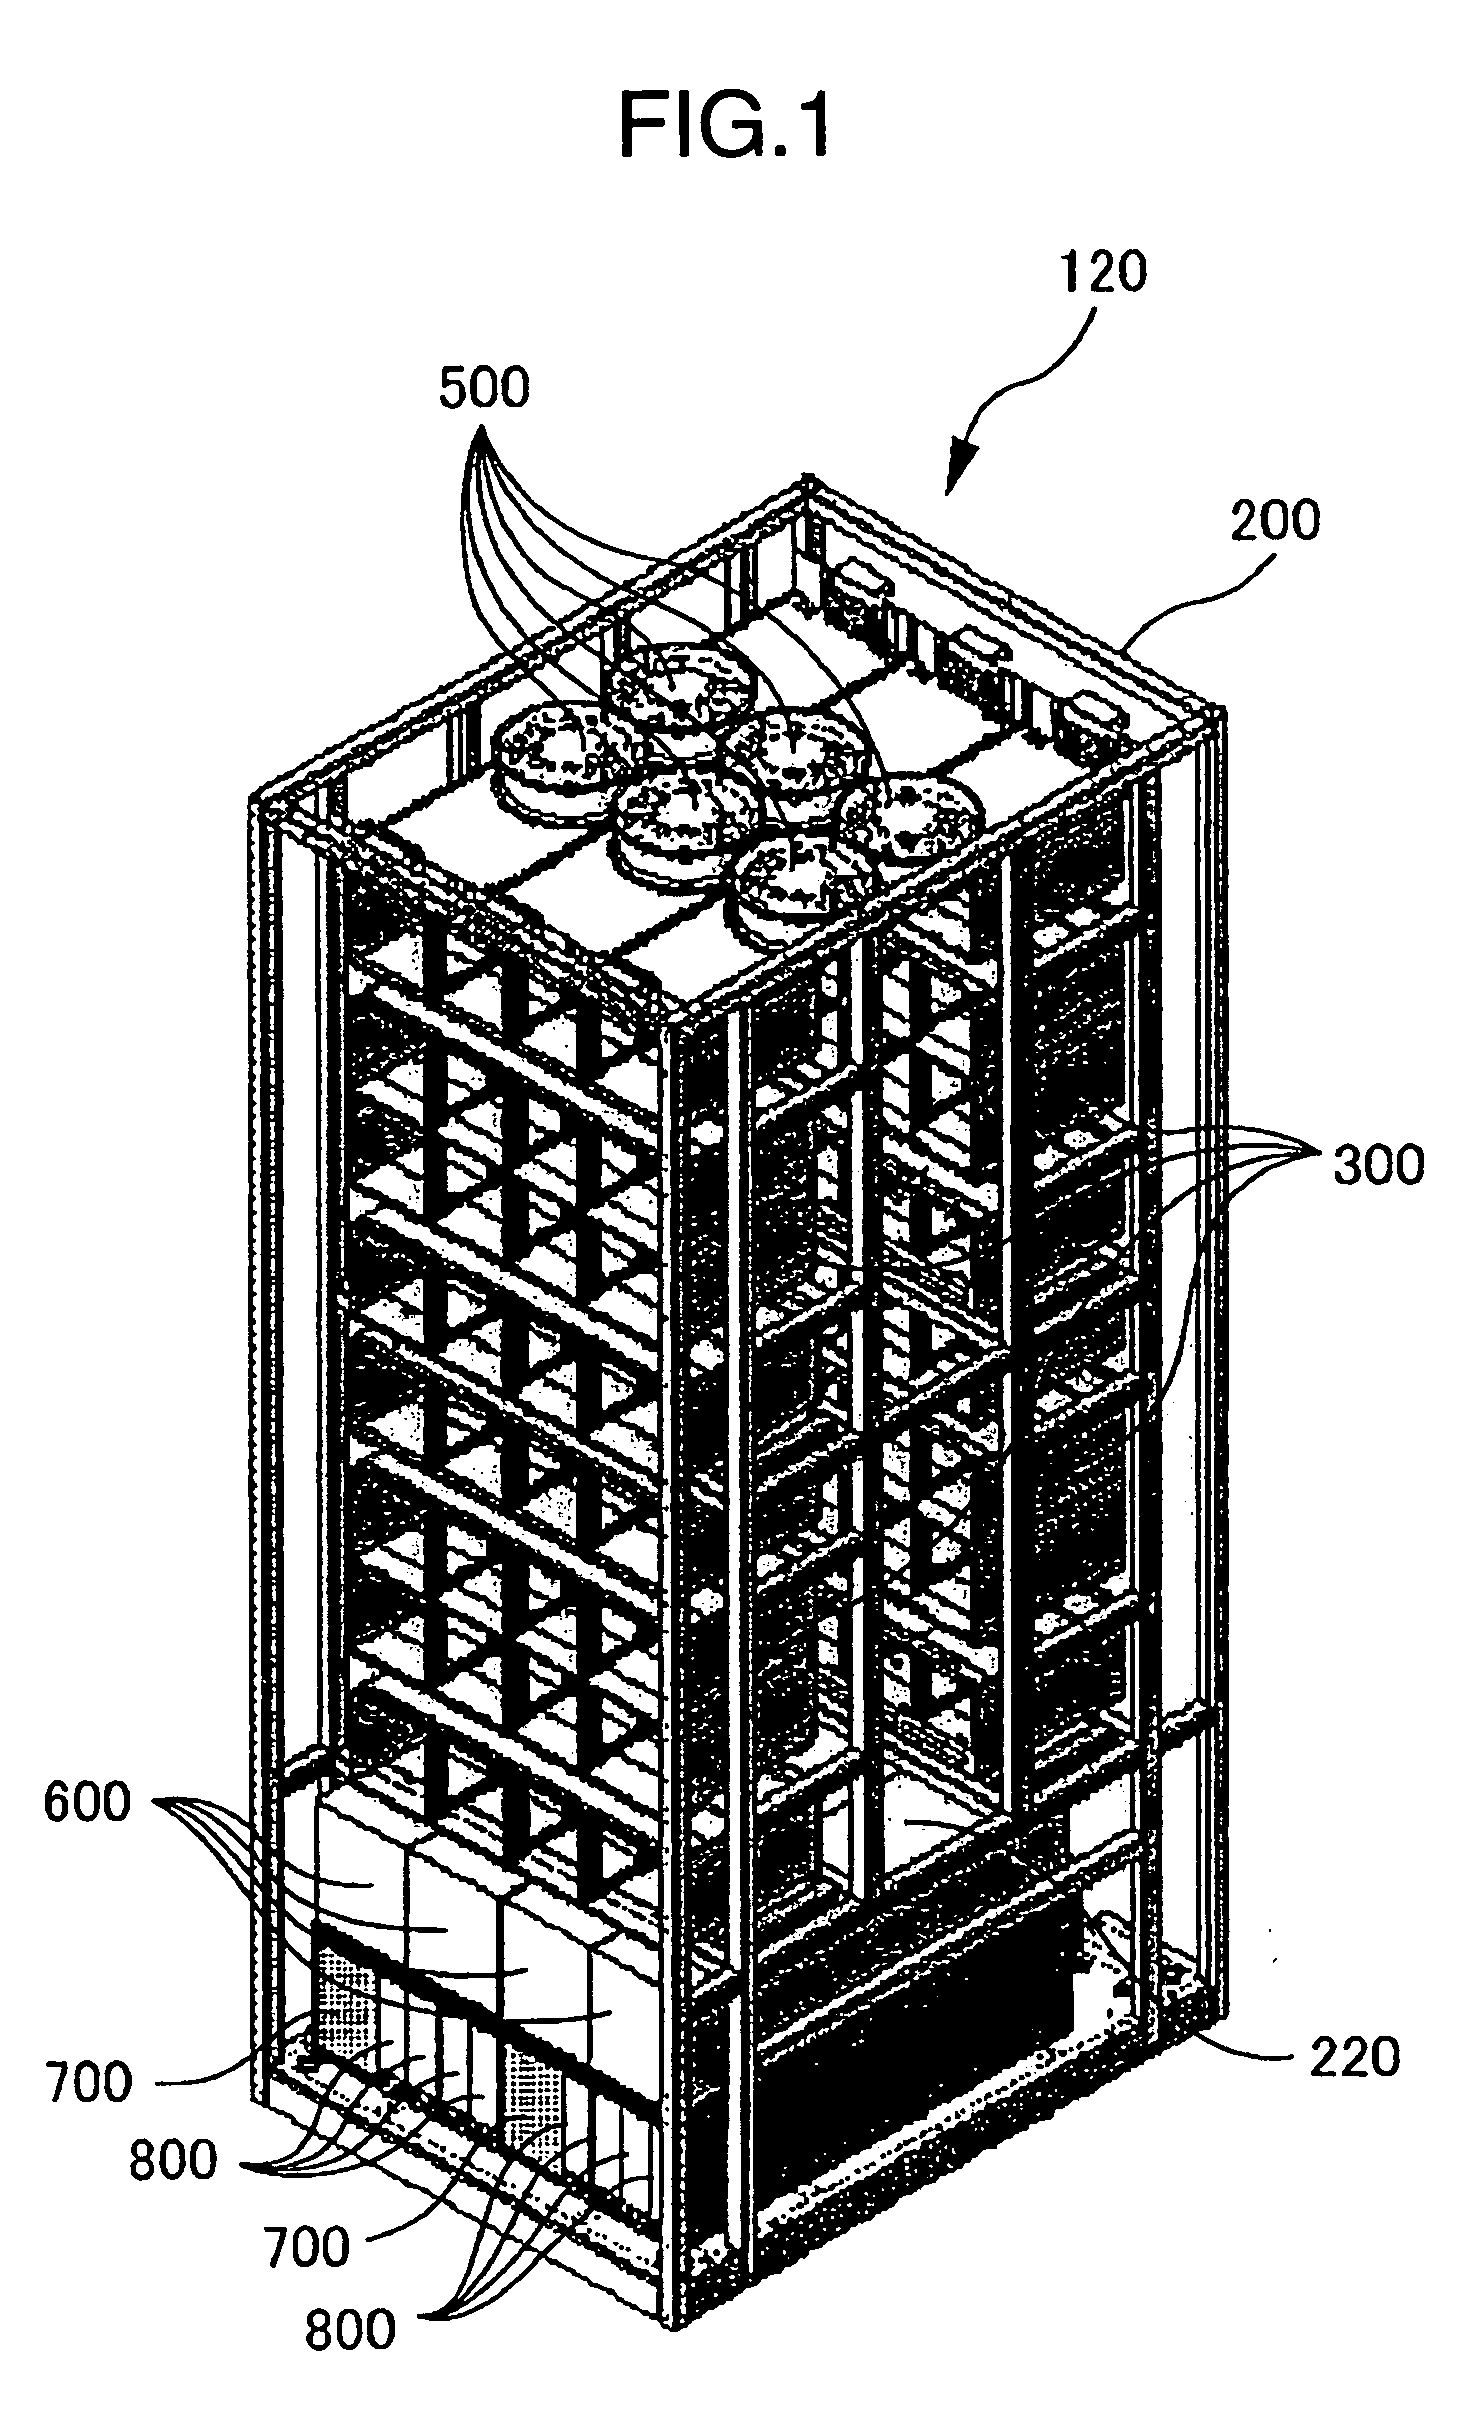 Disk array apparatus